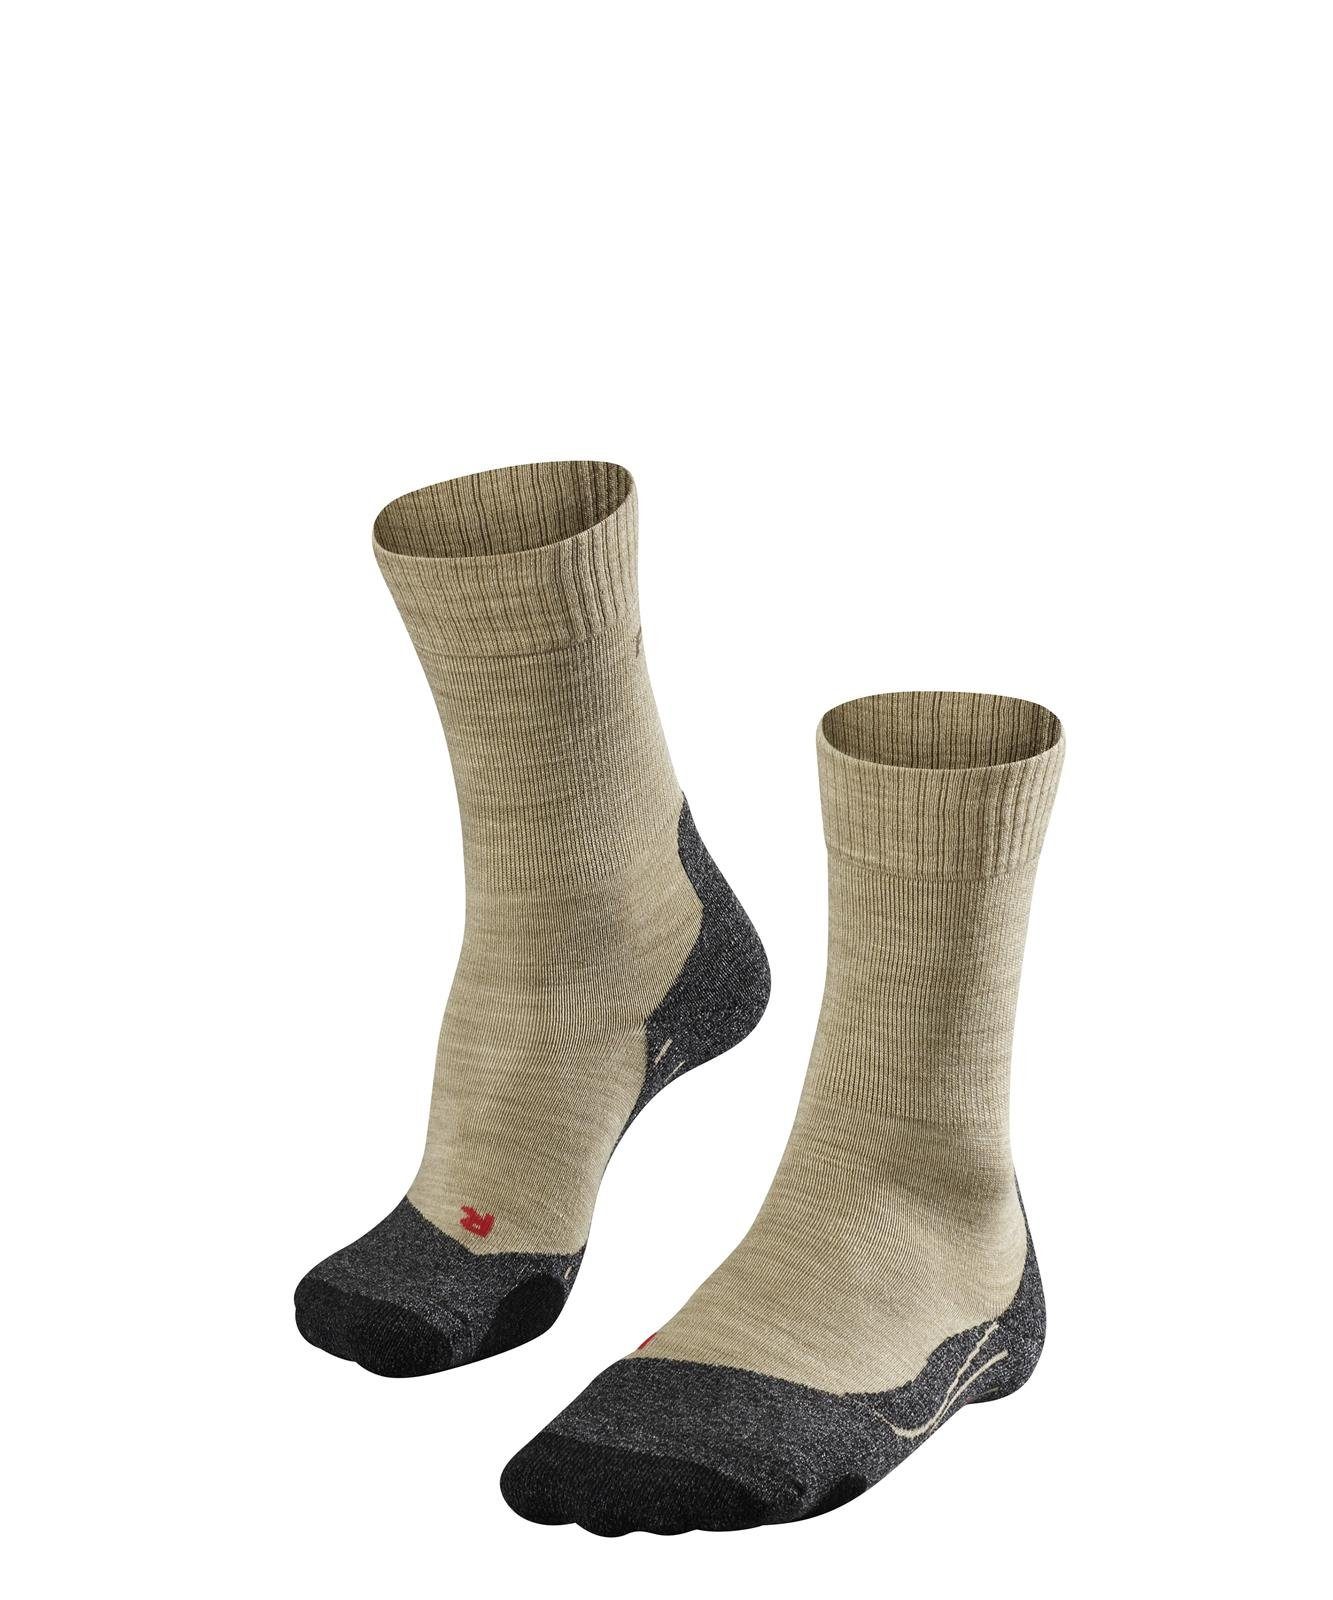 FALKE Sportsocken Herren Socken - Trekking Socken TK2, Polsterung Sand (4100)